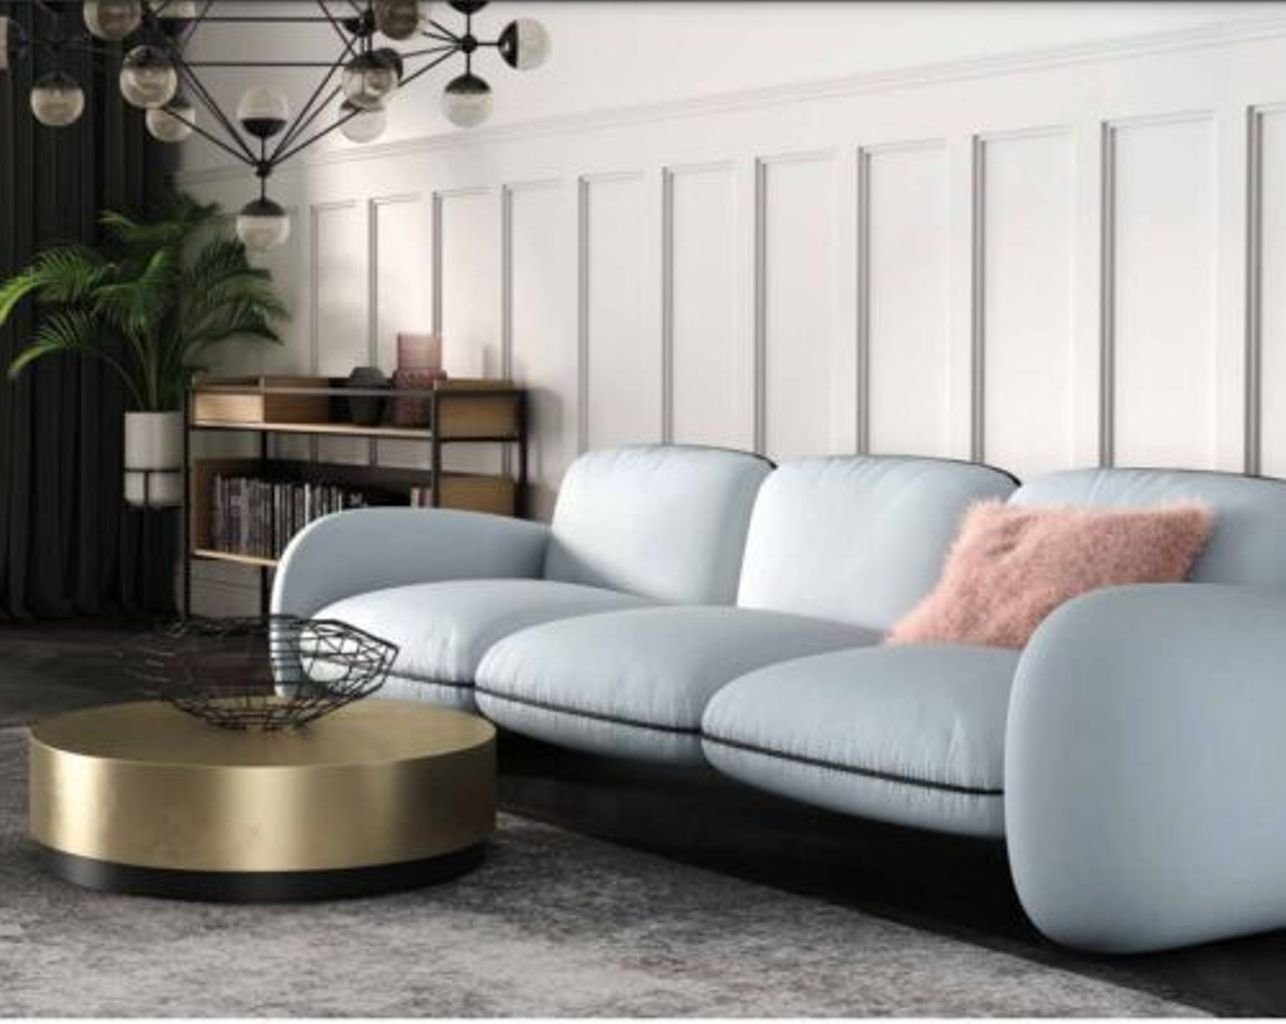 JVmoebel 3-Sitzer Blauer Dreisitzer 3-Sitzer Sofa Wohnzimmermöbel Luxus Design, Made in Europe